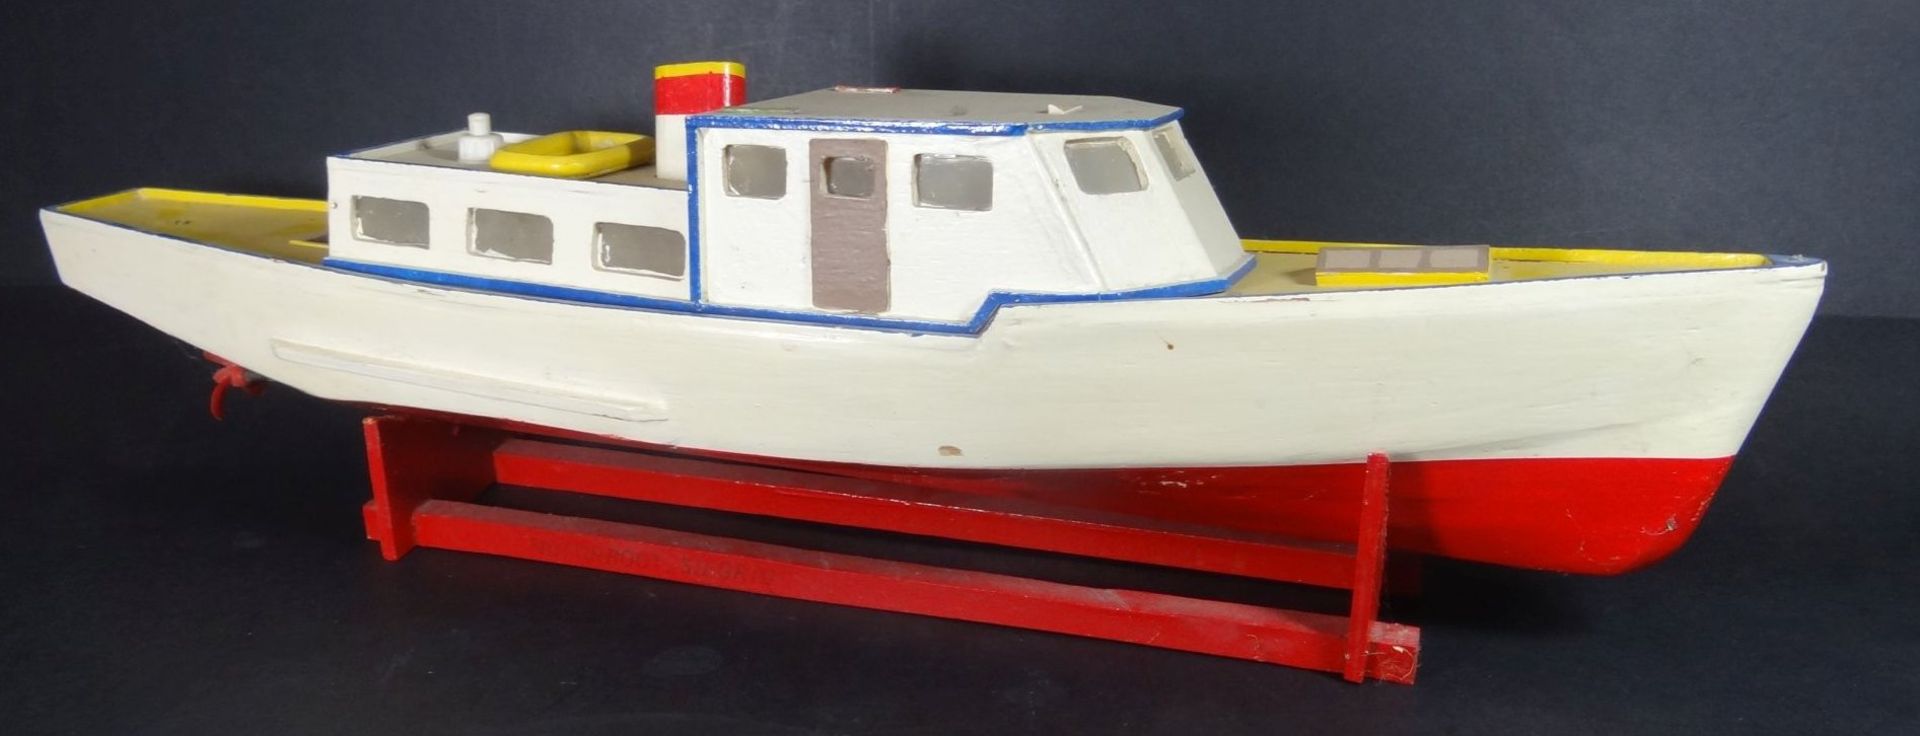 Schiffsmodel, Laubsägearbeit mit Motor?, Alters-u. Gebrauchsspuren, H-11 cm, L-48 c - Bild 3 aus 7